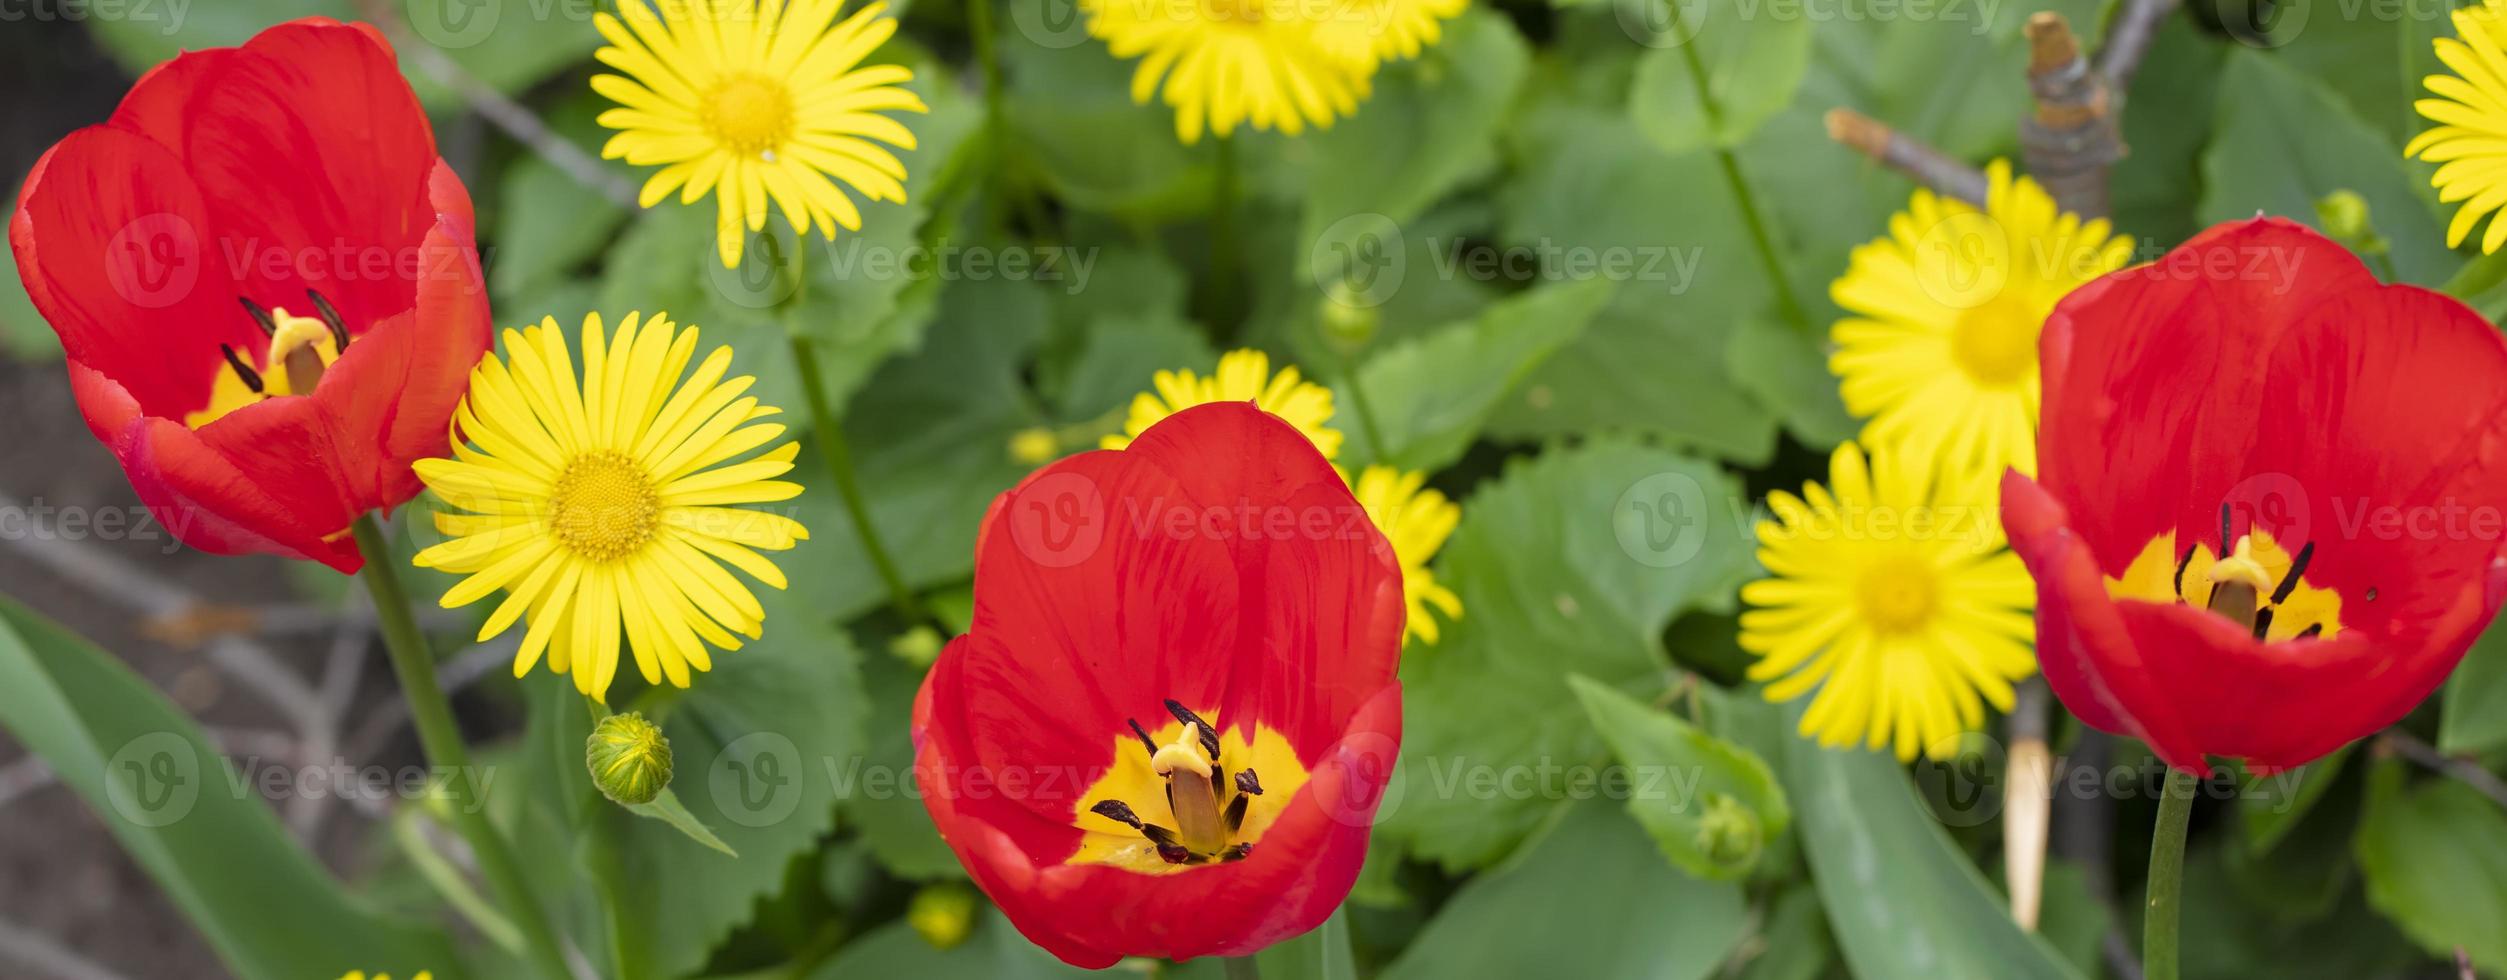 baner röd blommor tulpaner på en gul bakgrund. foto